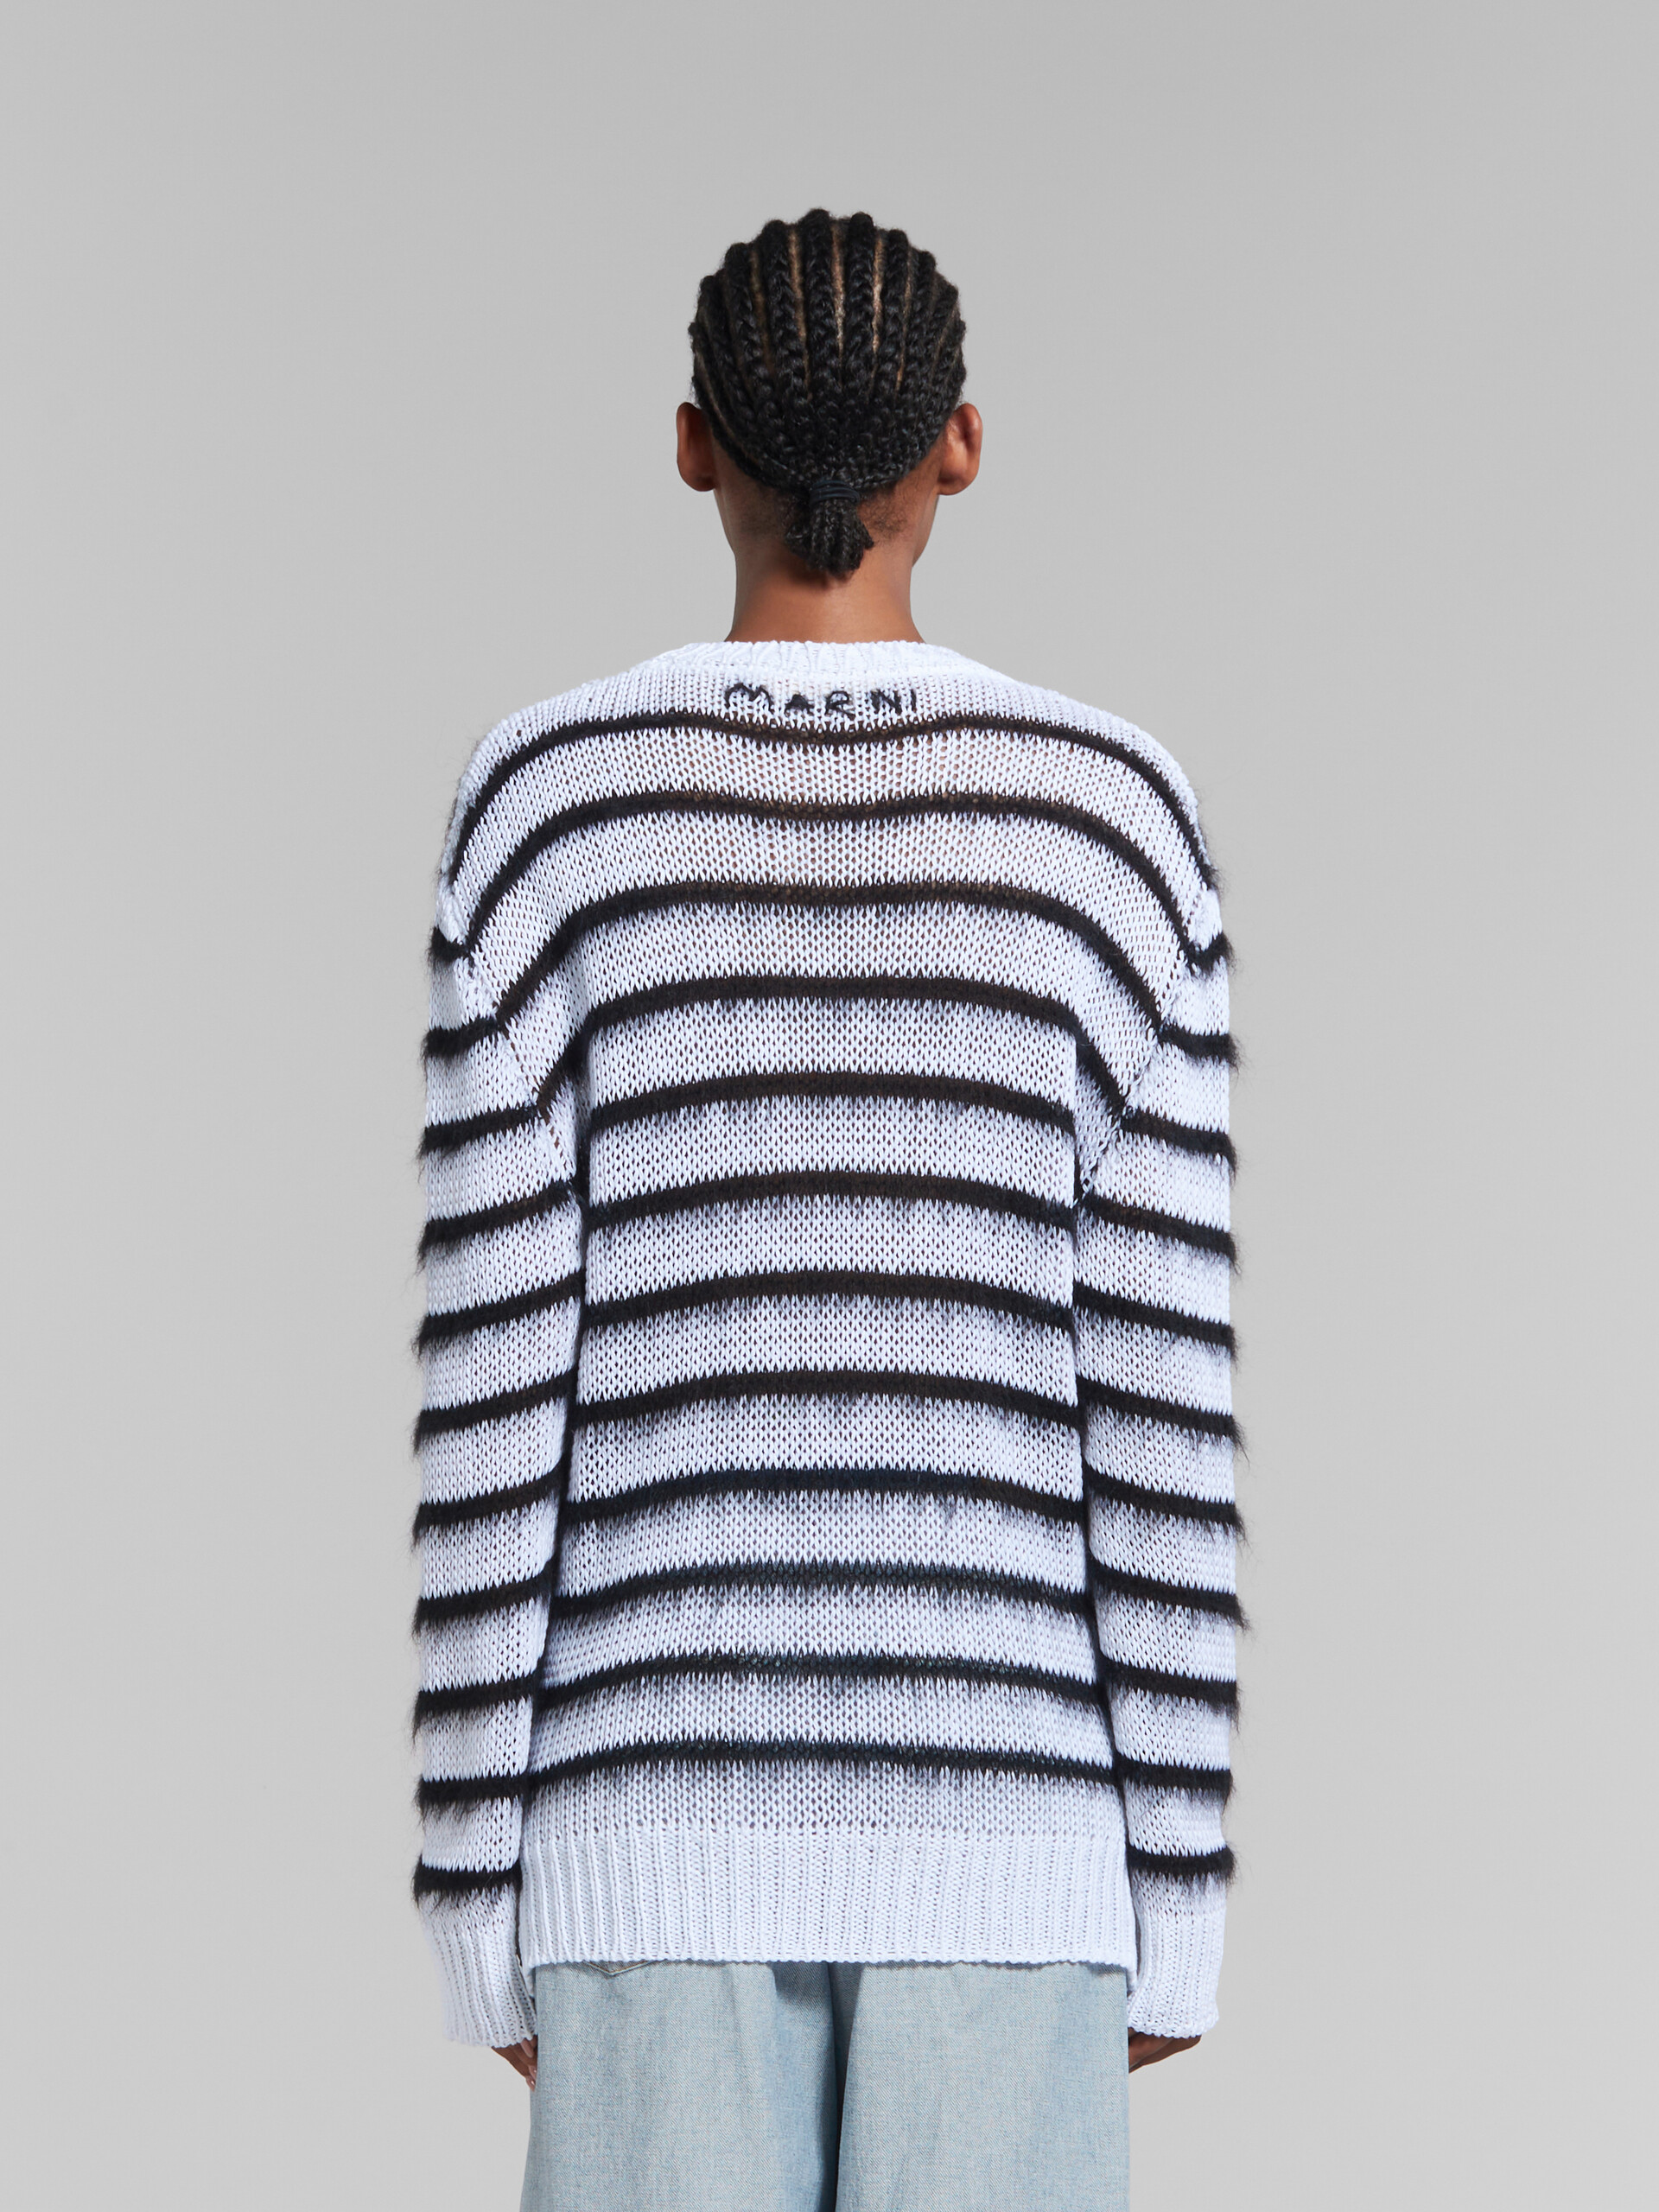 Maglione a righe in cotone e mohair bianco e nero - Pullover - Image 3